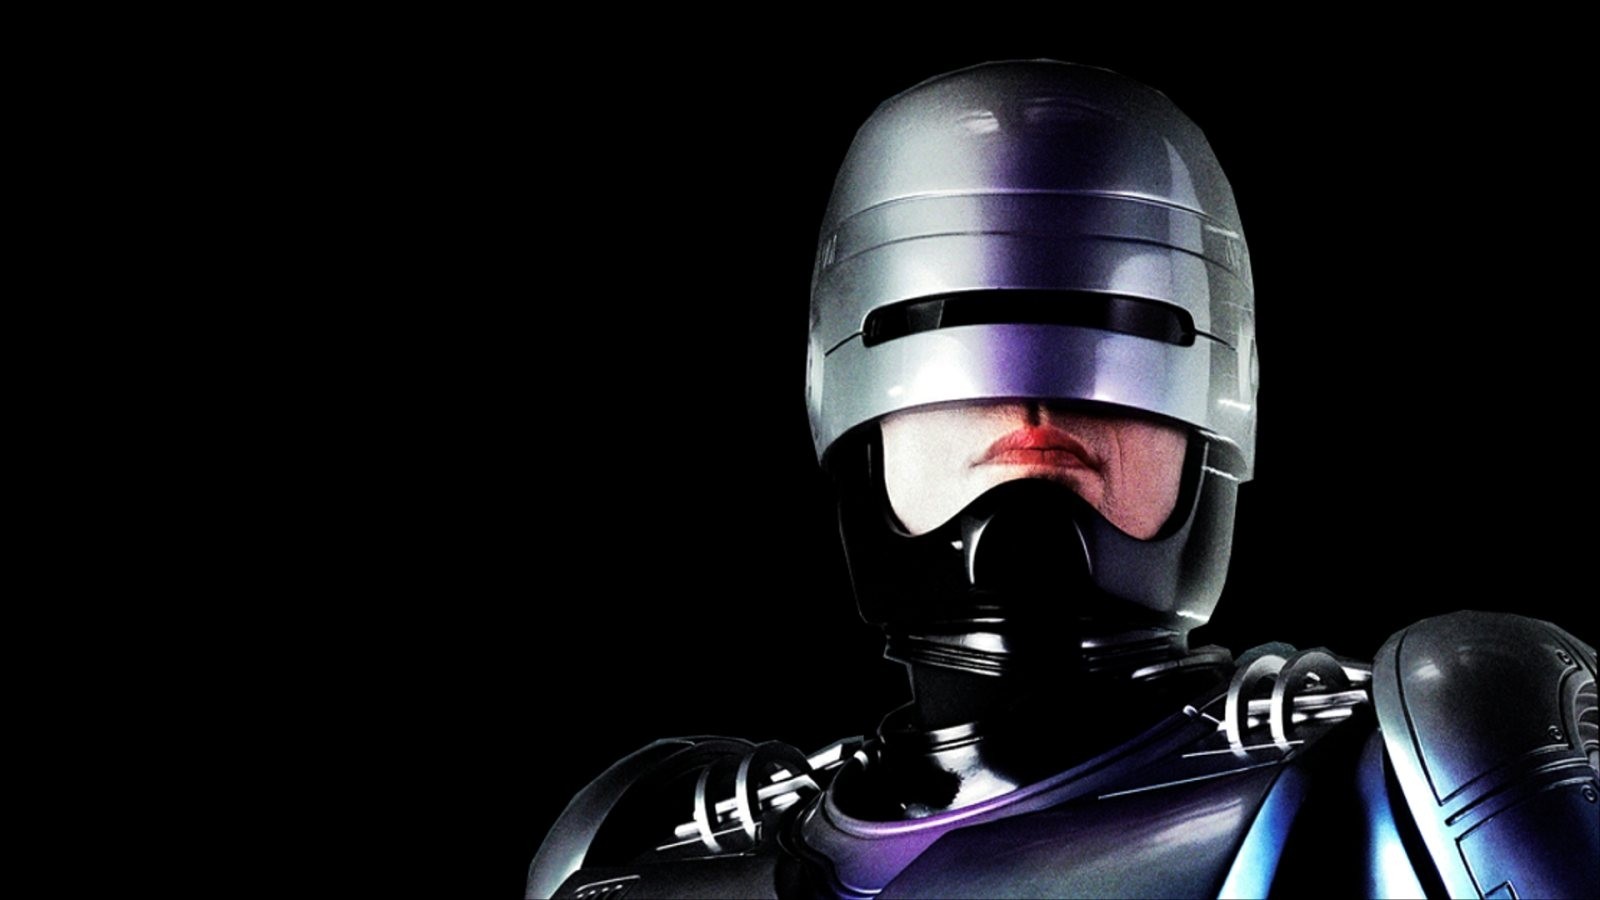 General 1600x900 RoboCop Peter Weller movies cyborg